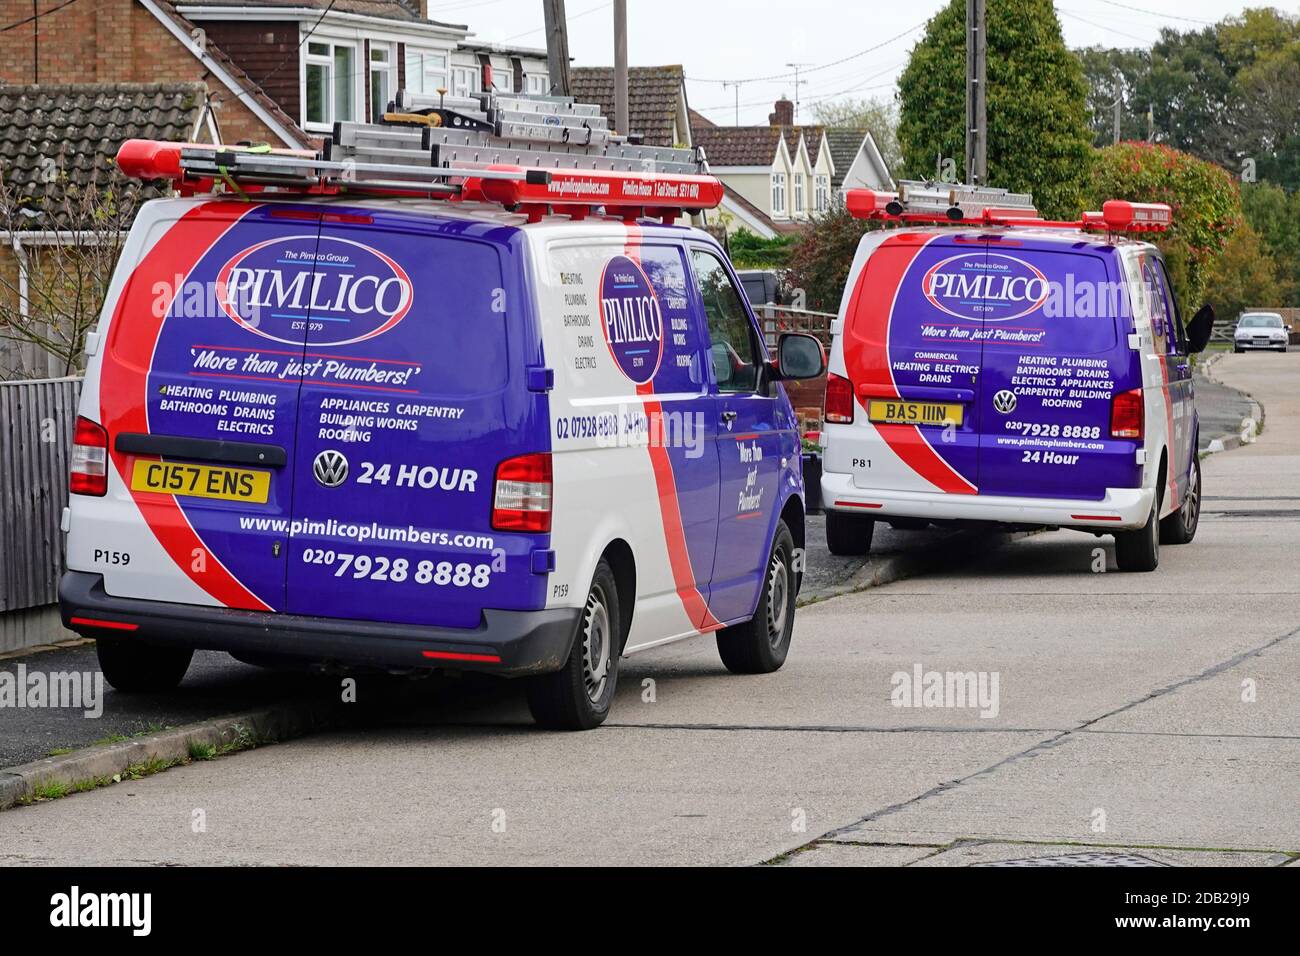 Pimlico plombers Group service business Vans à l'extérieur des graphiques de véhicule de maison Société de publicité services de soins pour l'entretien de la propriété travail Angleterre Royaume-Uni Banque D'Images